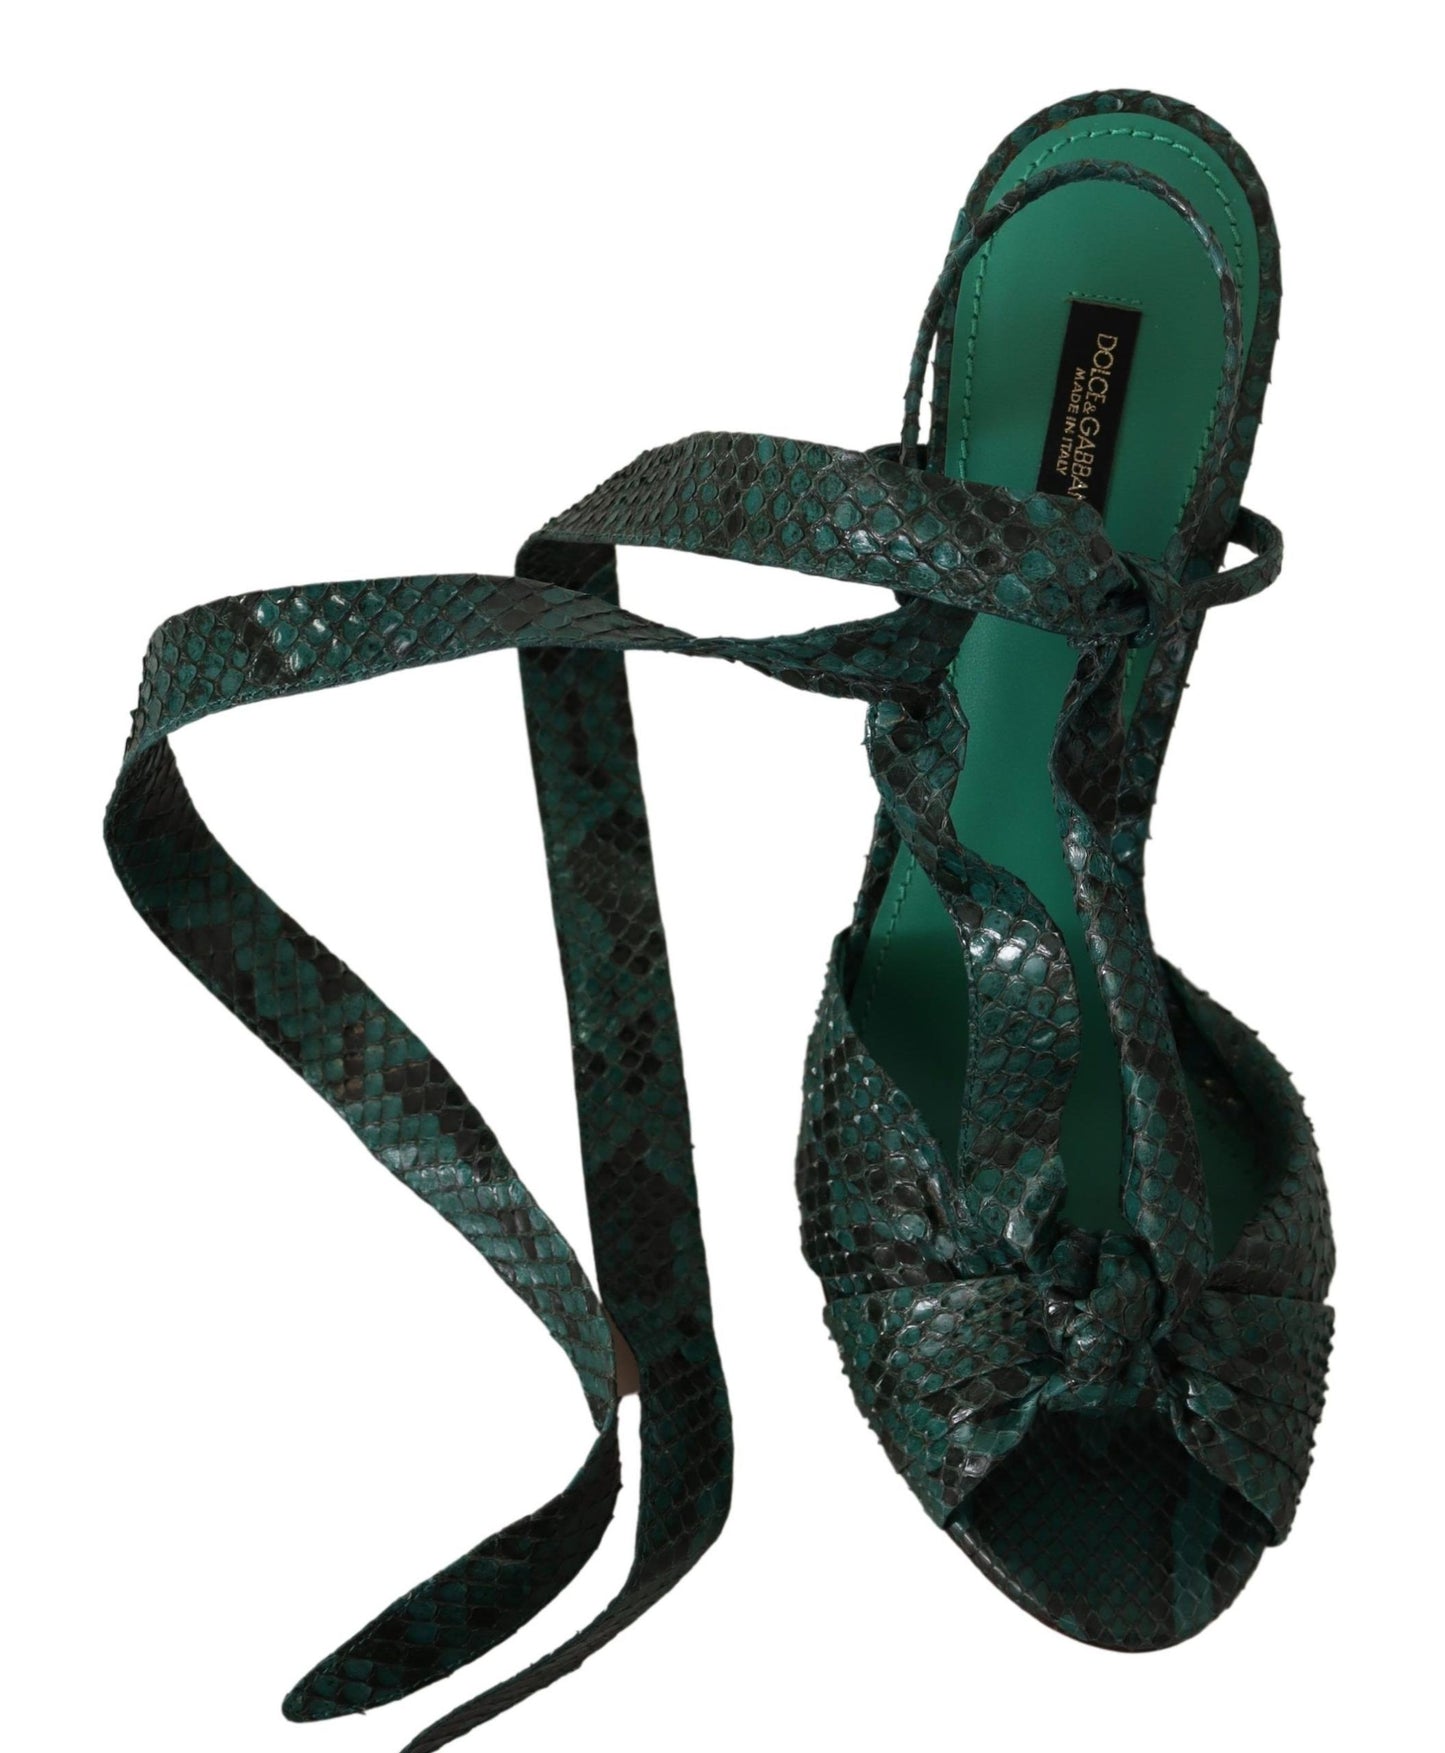 Elegant Green Python Strappy Heels